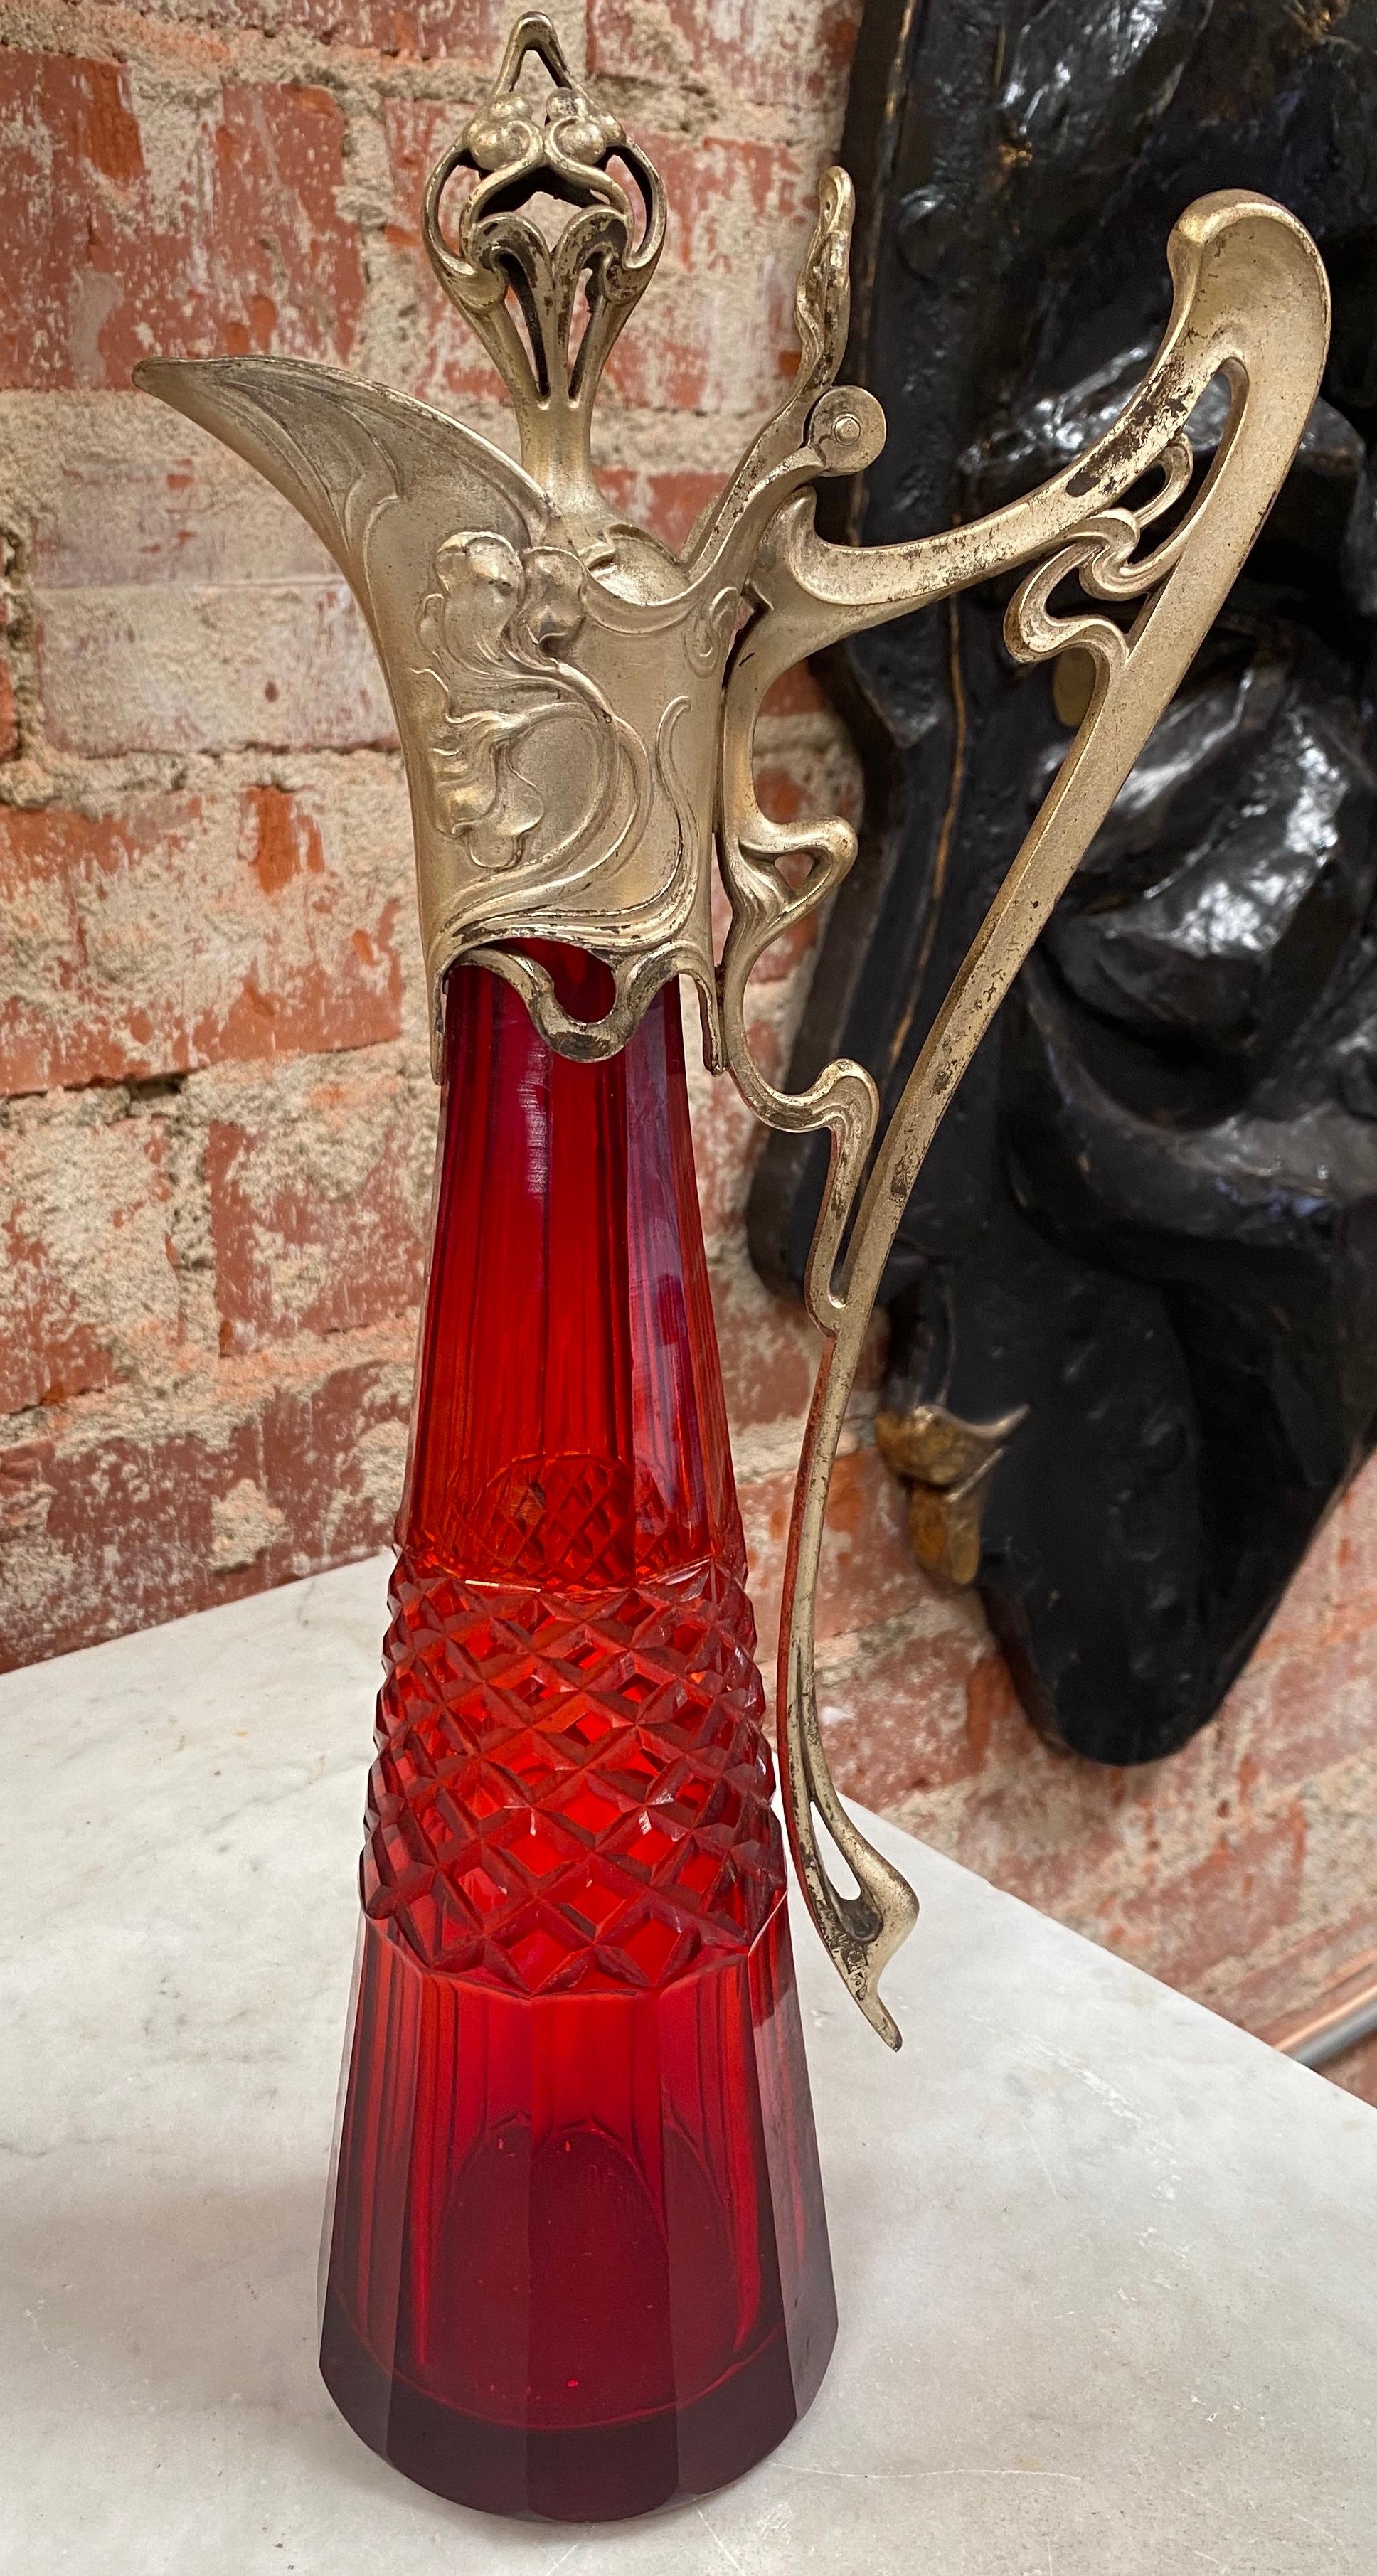 Schöner handgefertigter italienischer Dekanter im Vintage-Stil aus rotem Kristallglas, die Flasche hat eine erstaunliche Form. Atemberaubend.